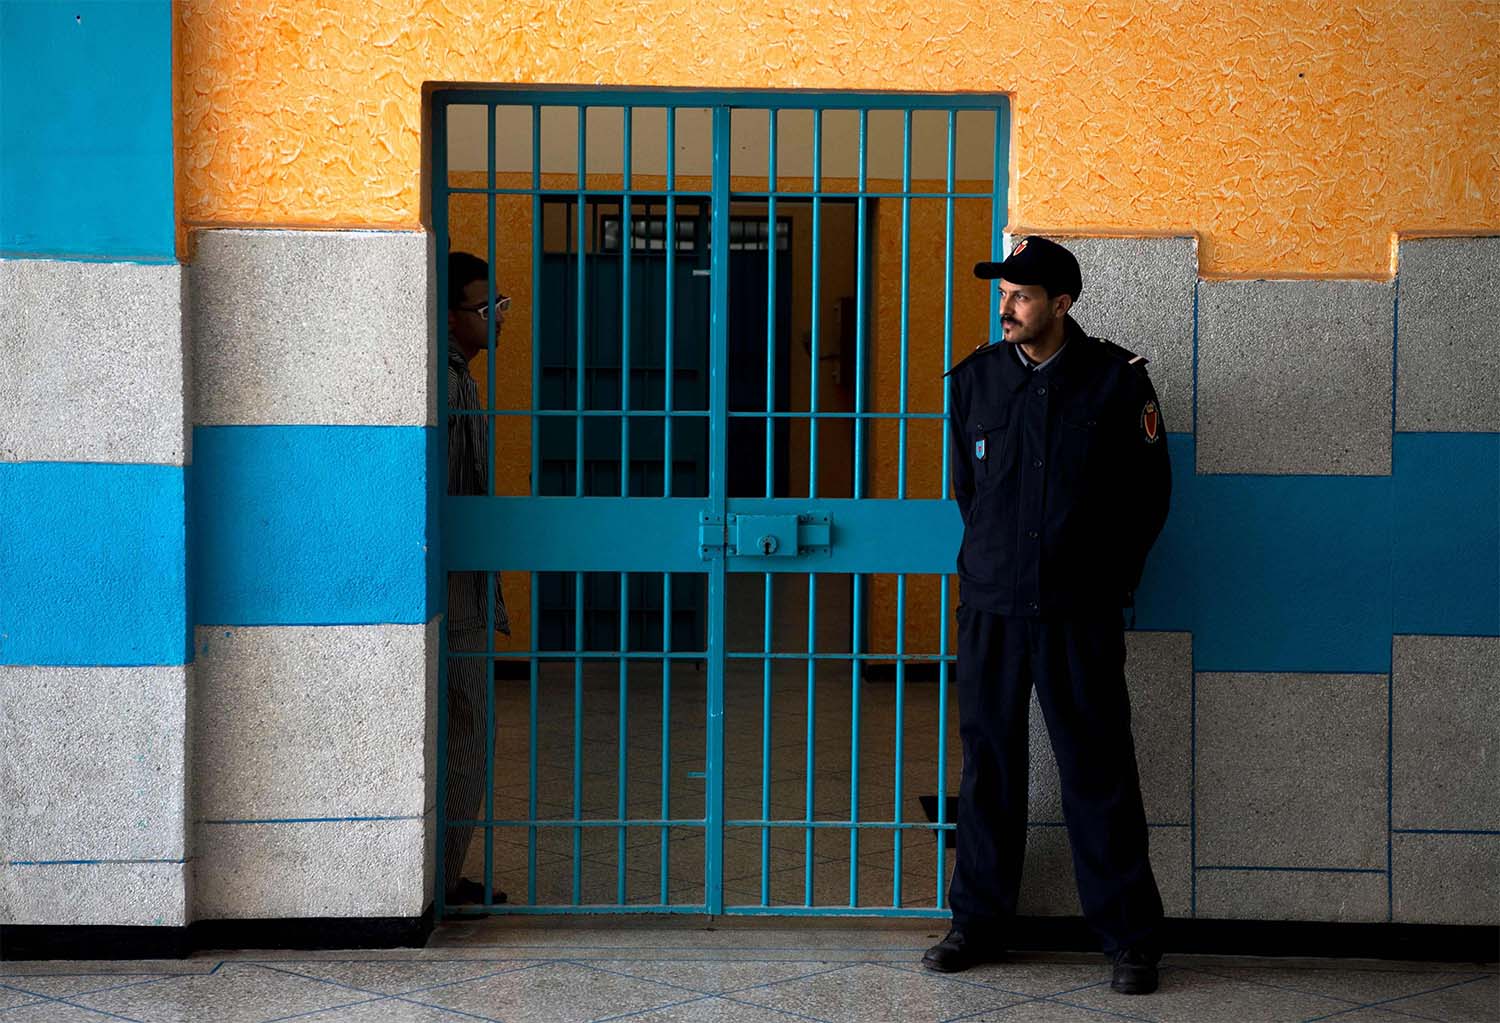 Oukacha prison in Casablanca